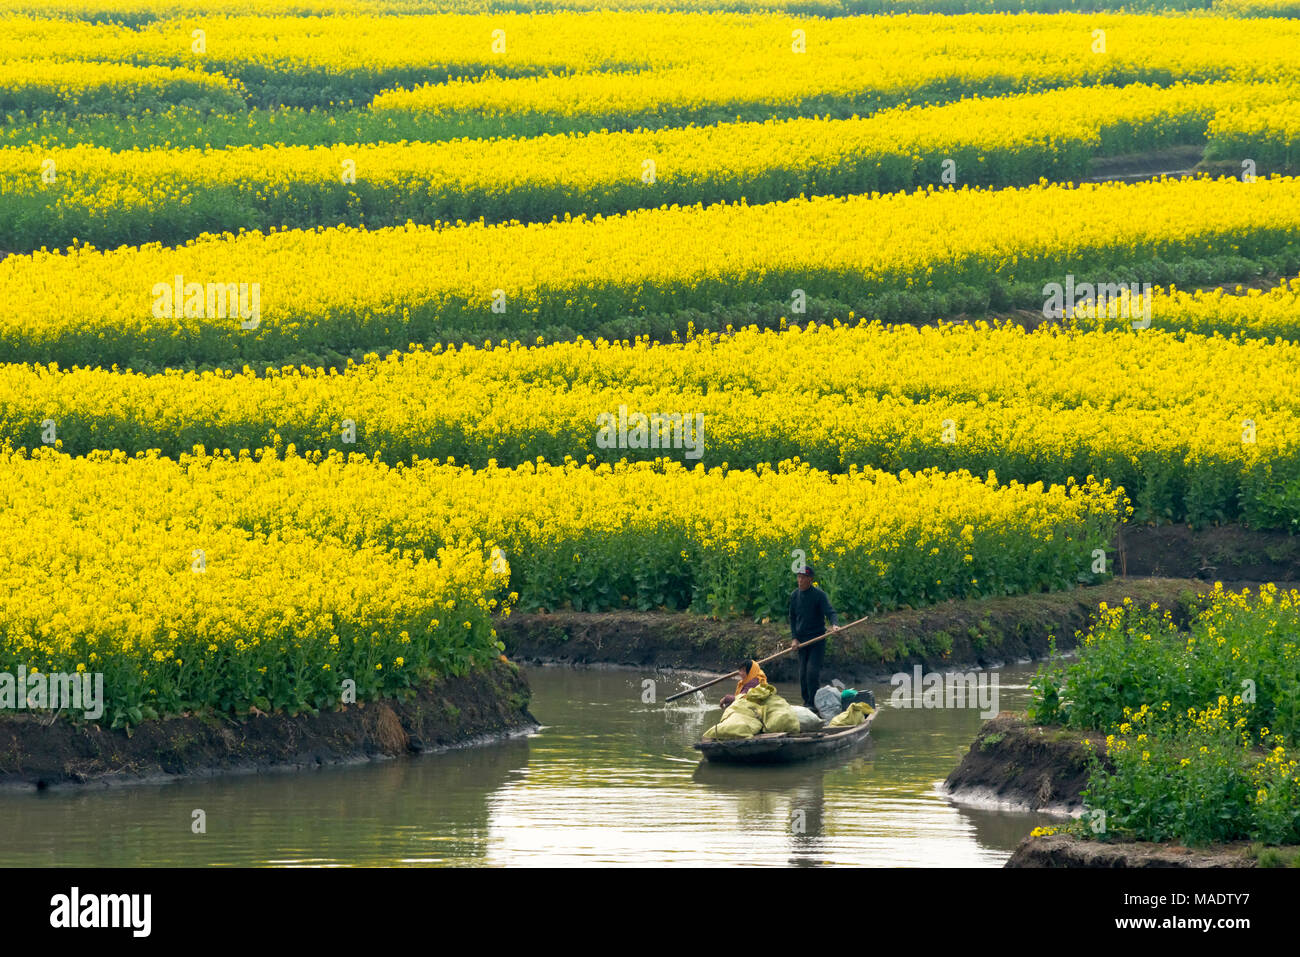 Rudern mit dem Boot auf dem Fluss durch Thousand-Islet Raps Blumenfelder, Provinz Jiangsu, China Stockfoto